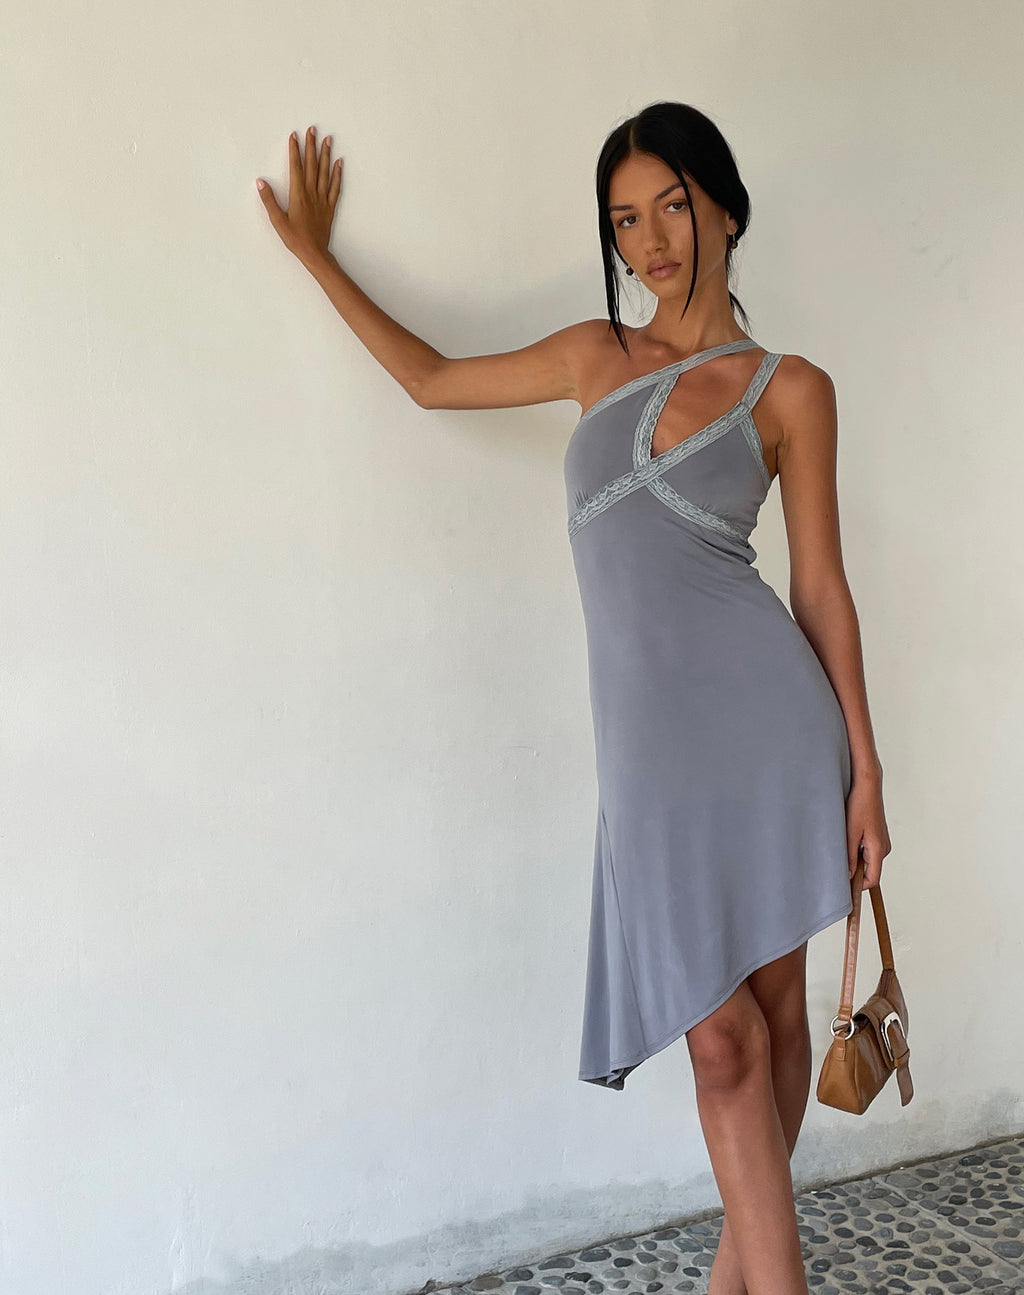 MOTEL X JACQUIE Chrissy Asymmetric Mini Dress in Slinky Grey